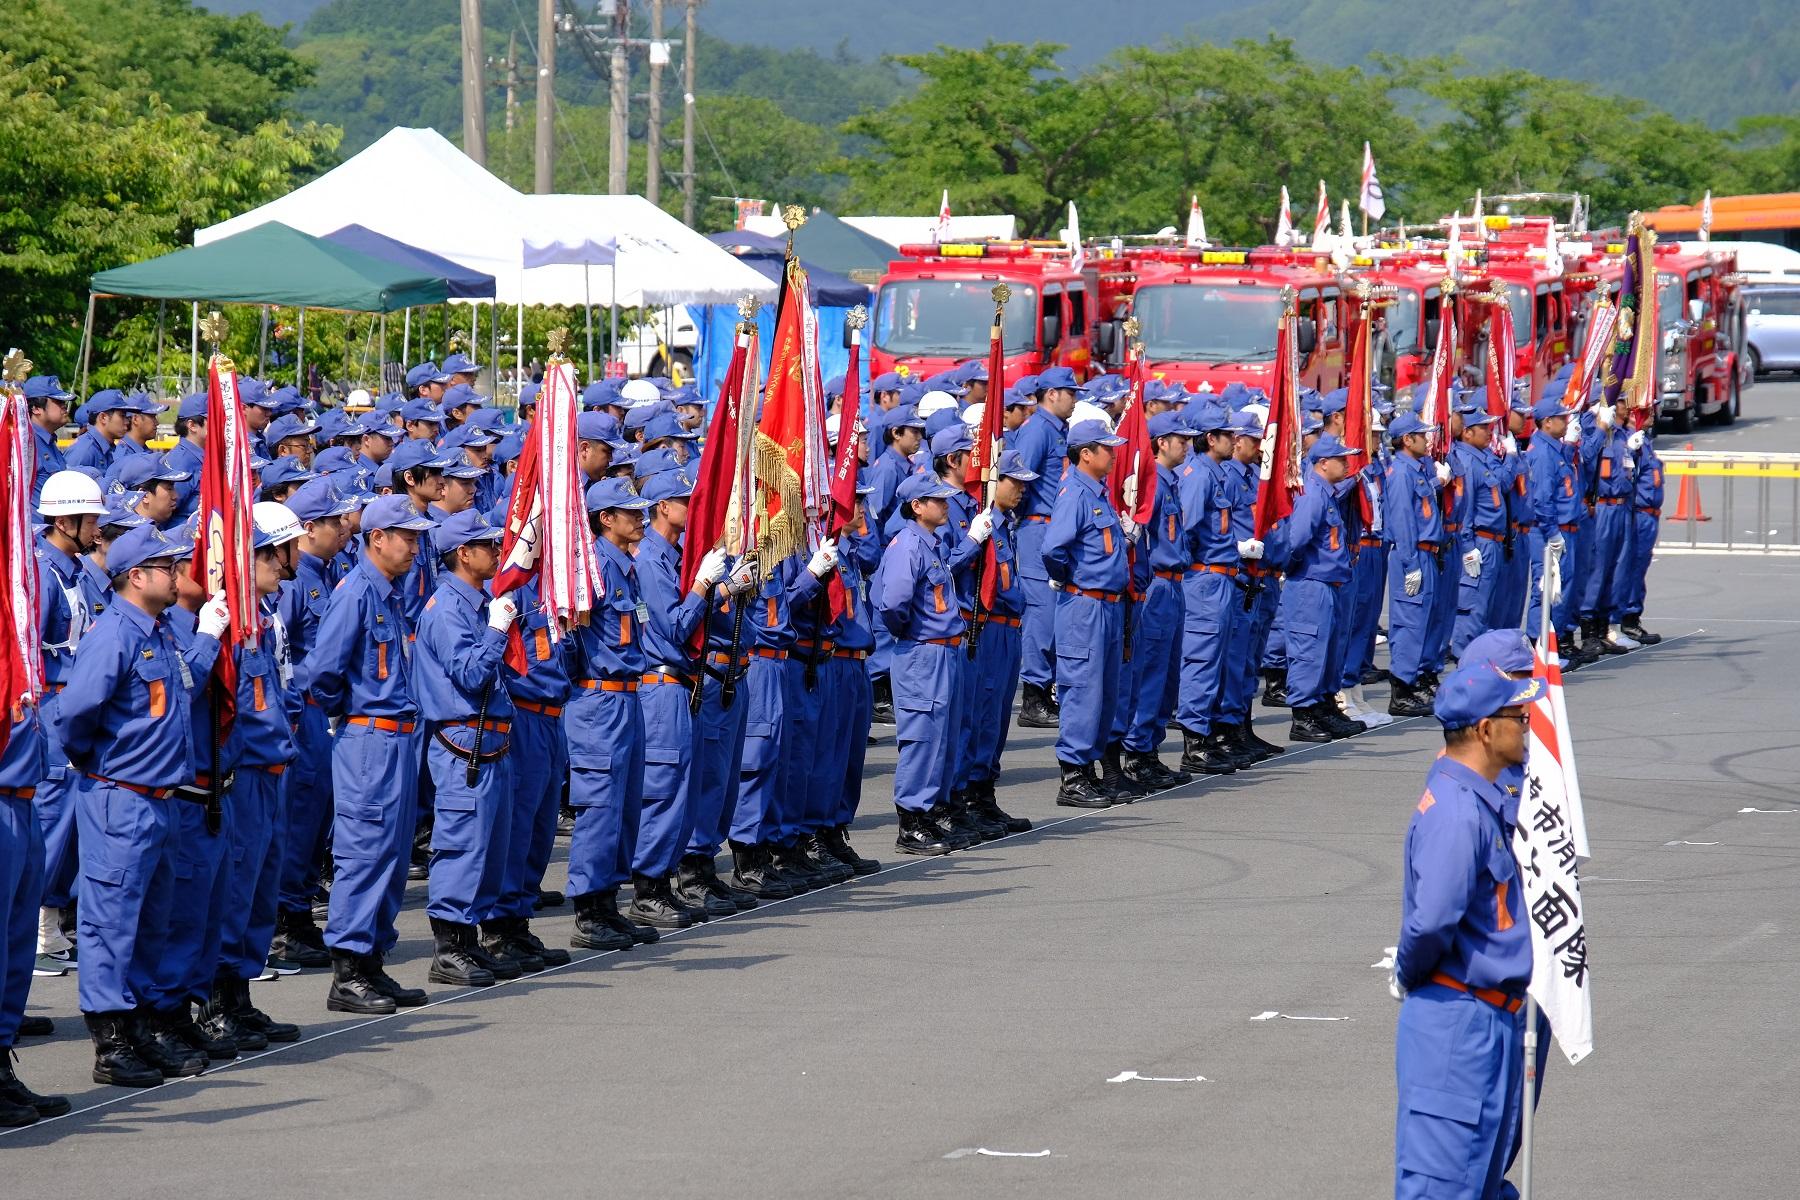 並ぶ消防車と消防団旗を持ち整列する消防団員の写真